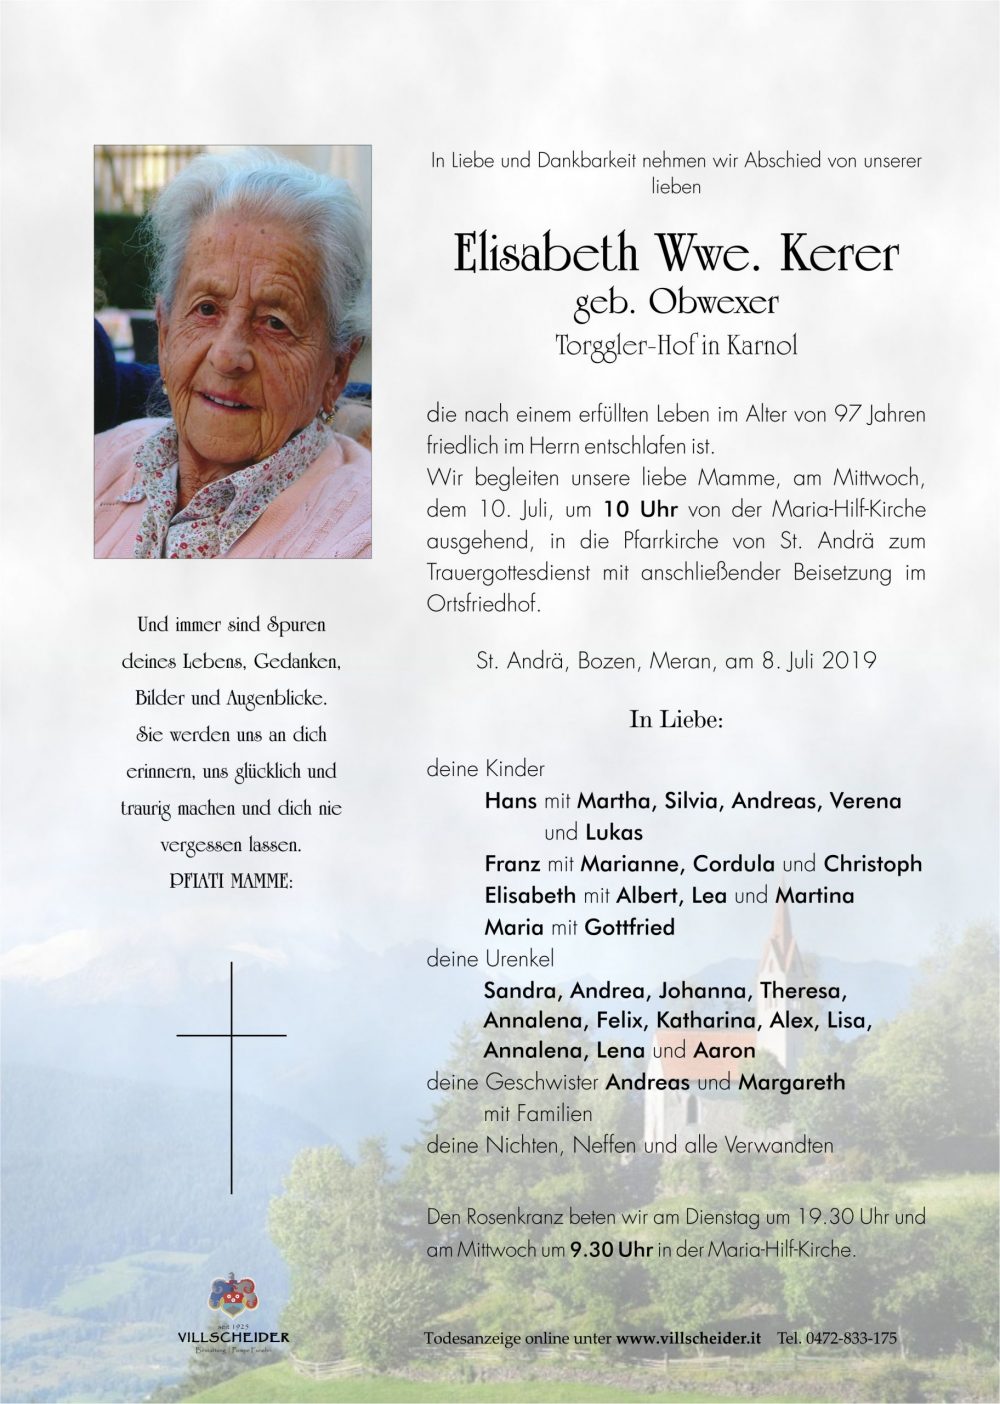 Elisabeth Wwe. Kerer geb. Obwexer - Bestattung Villscheider